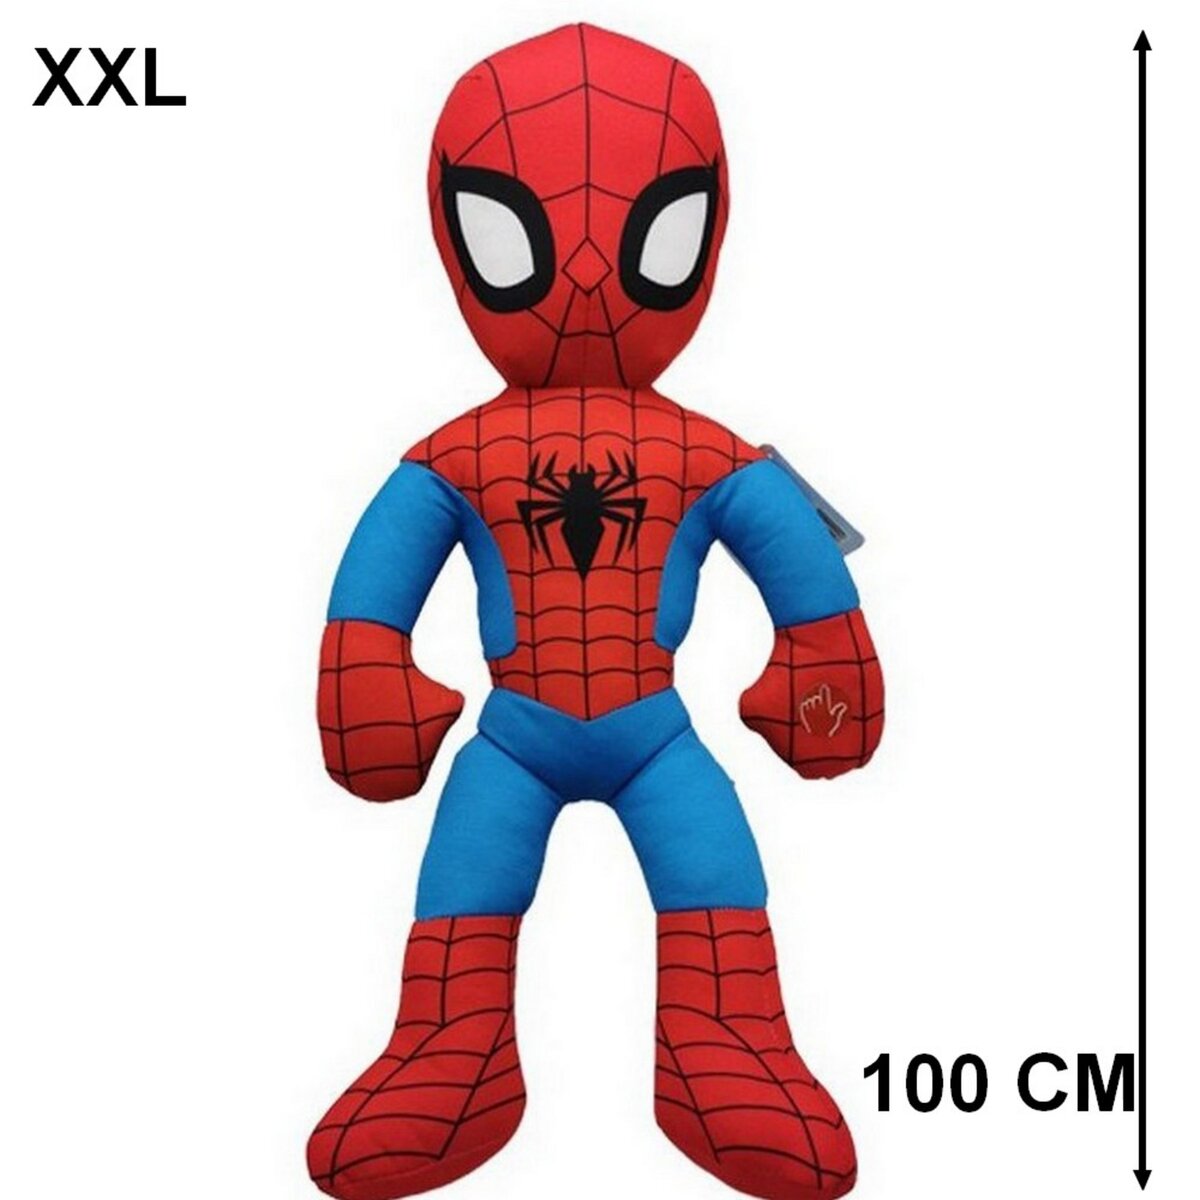 XXL Peluche Spiderman sonore 100 cm avec son Geante pas cher 